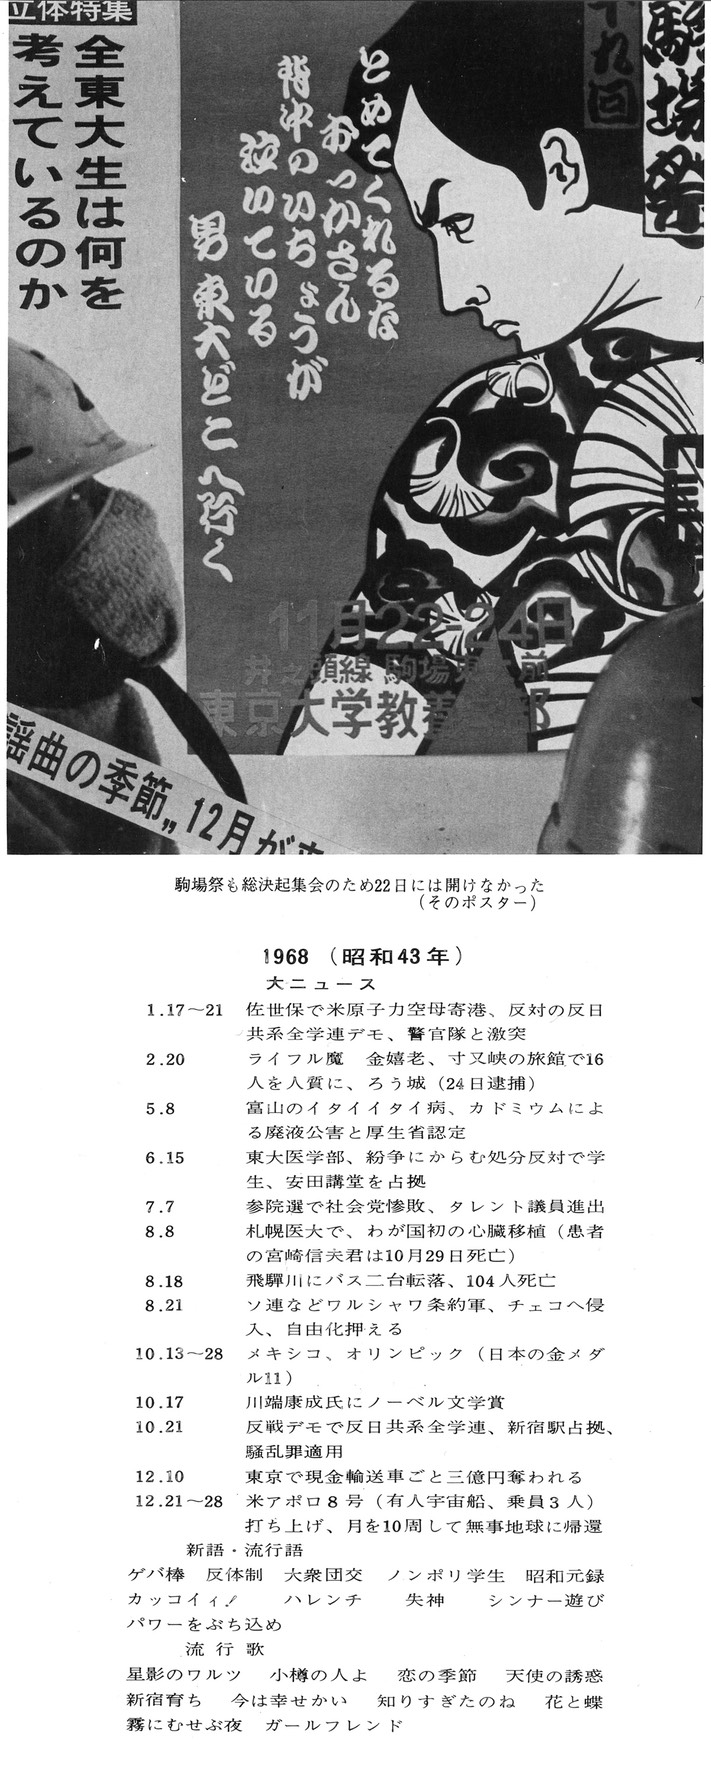 卒業アルバム回顧ページ 1968